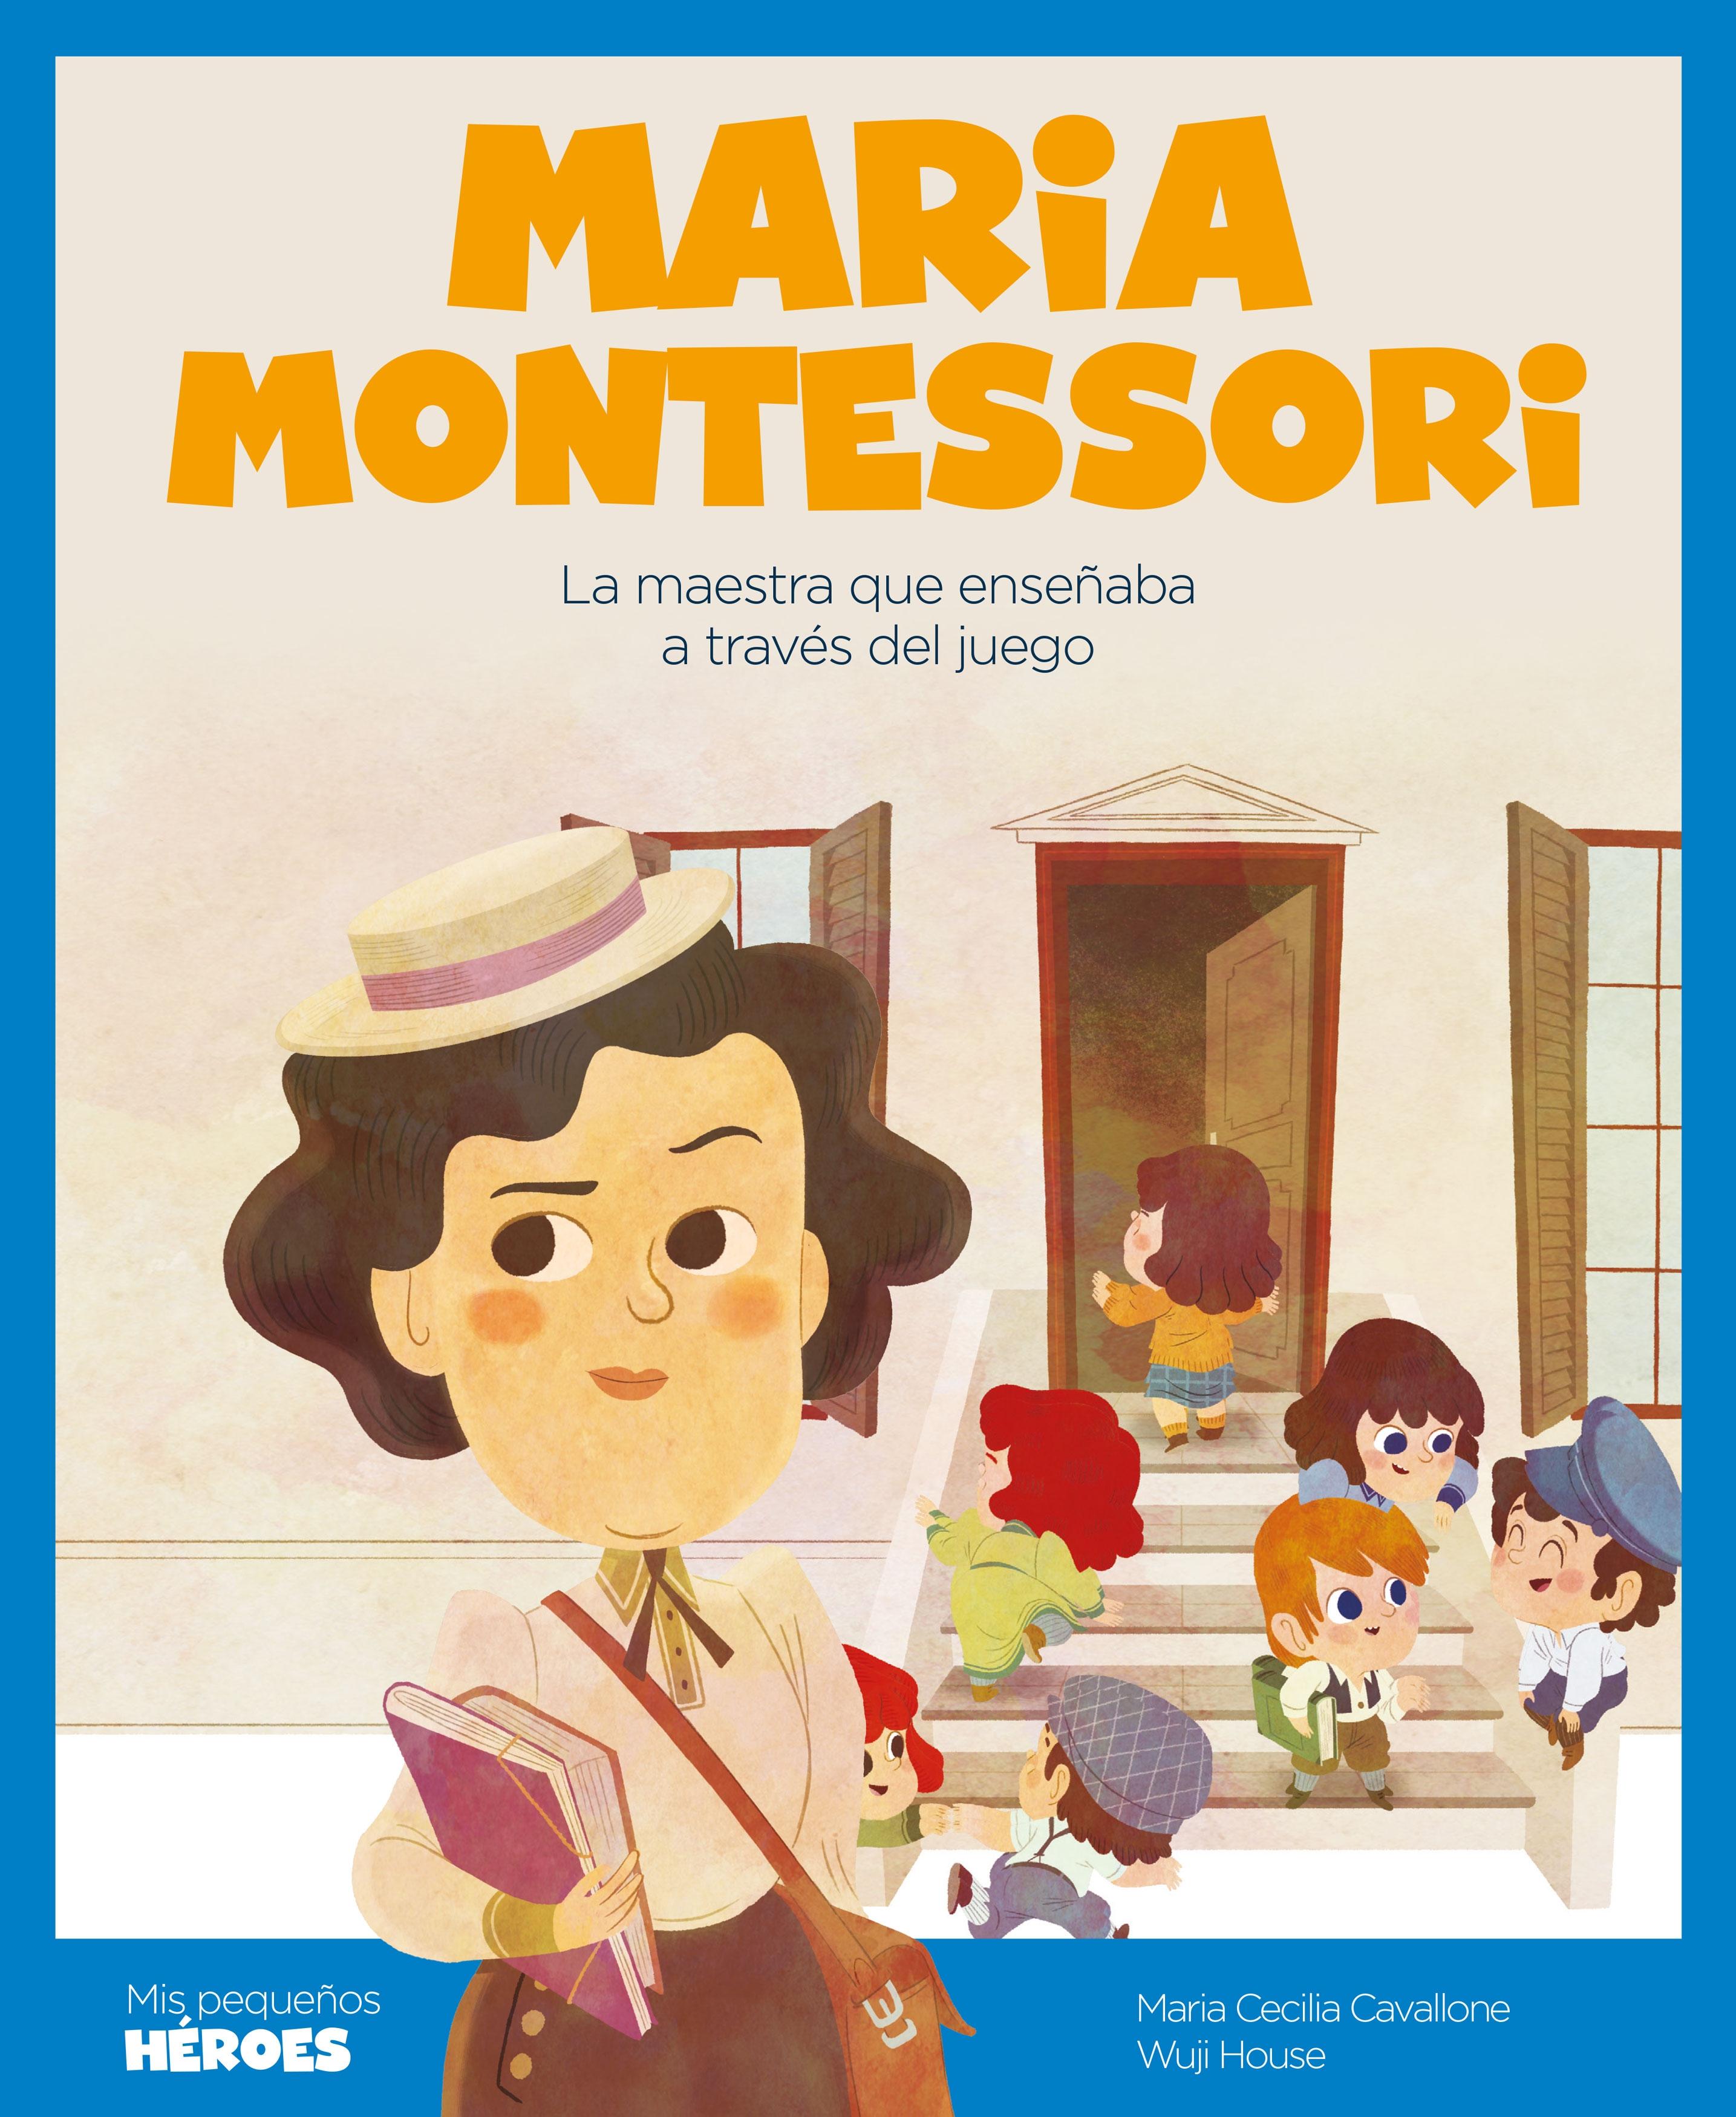 Maria Montessori "La maestra que enseñaba a través del juego". 